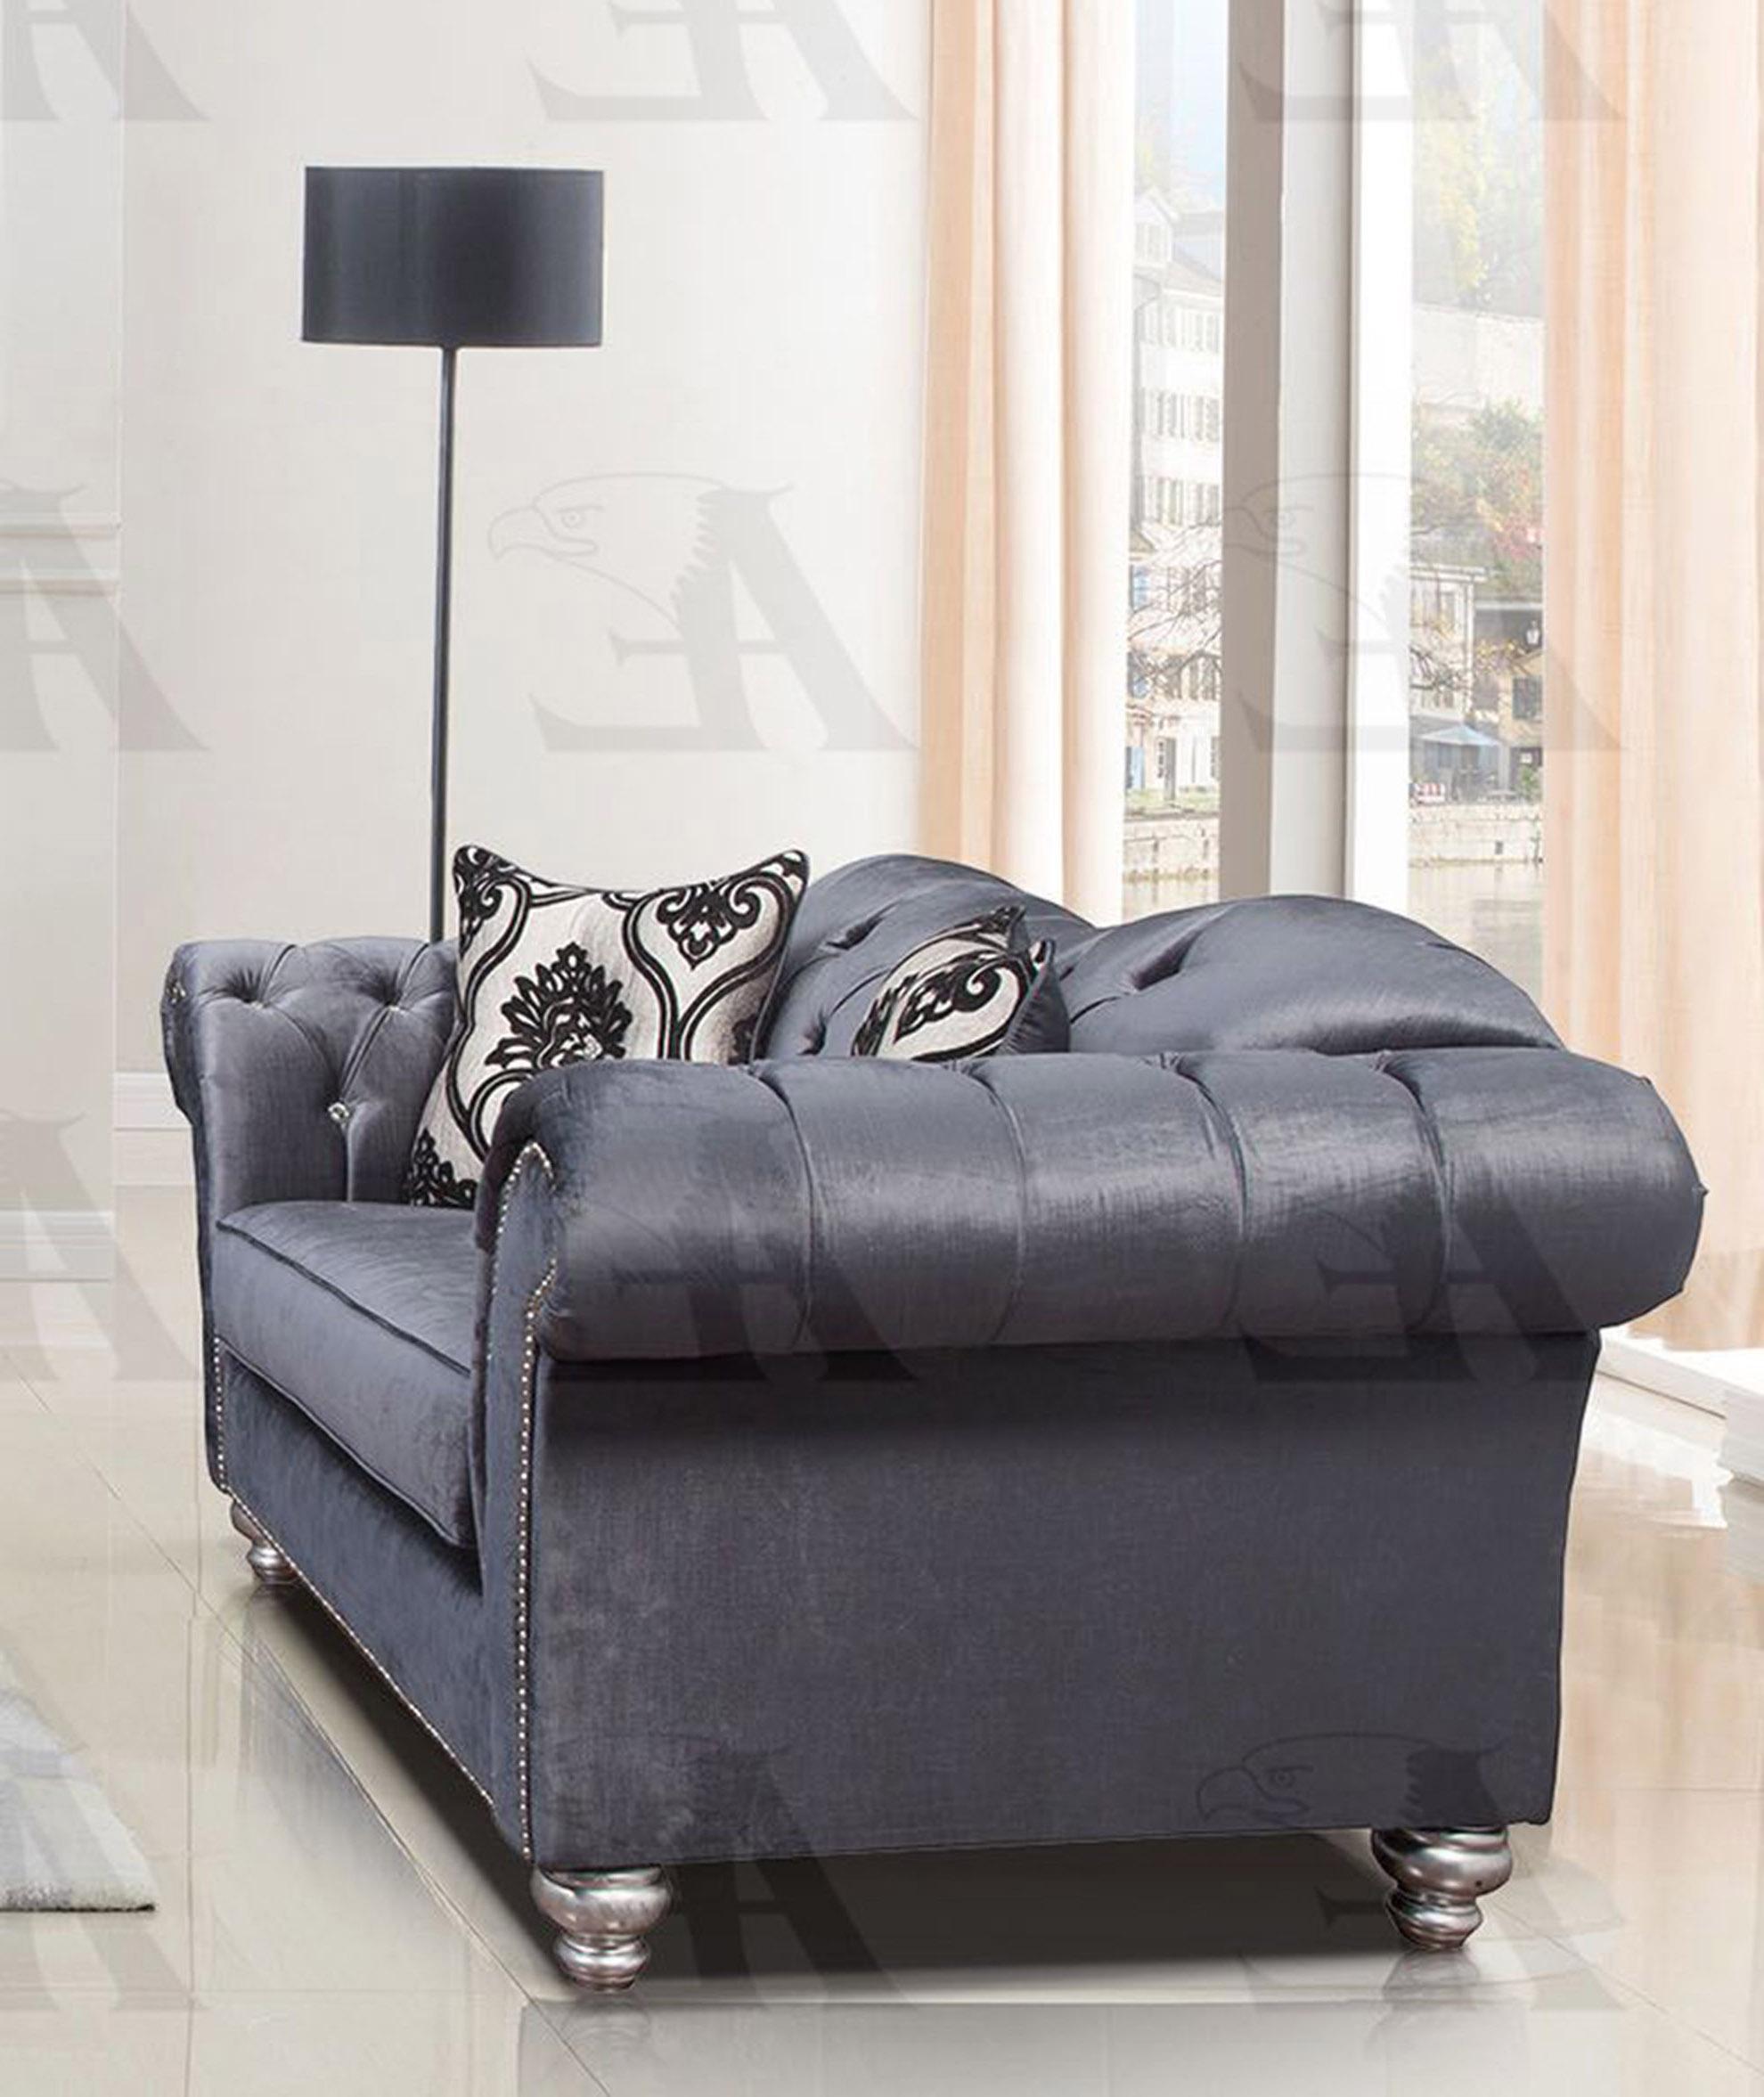 

    
AE2600-GB -Set-2 American Eagle Furniture Sofa and Loveseat Set
